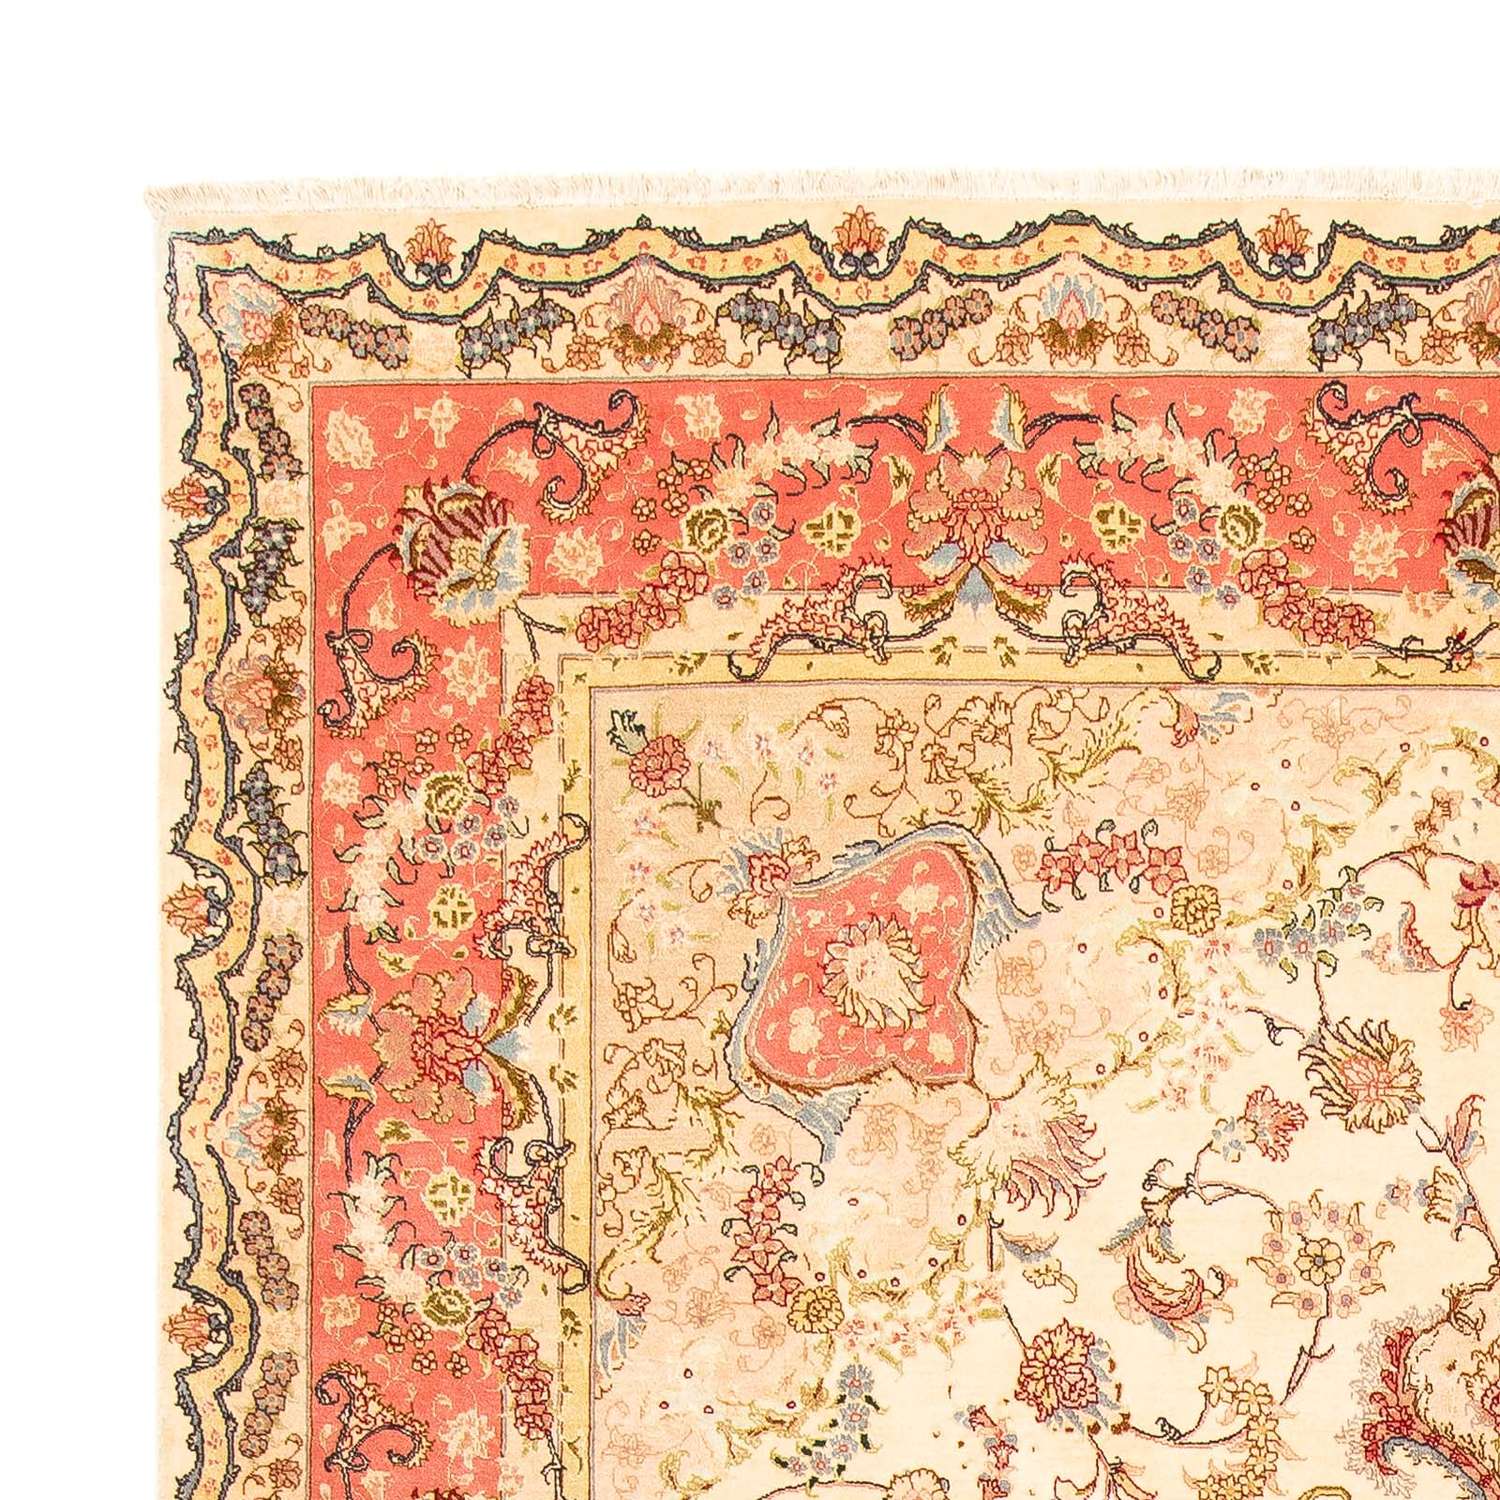 Perský koberec - Tabríz - Královský - 304 x 200 cm - béžová